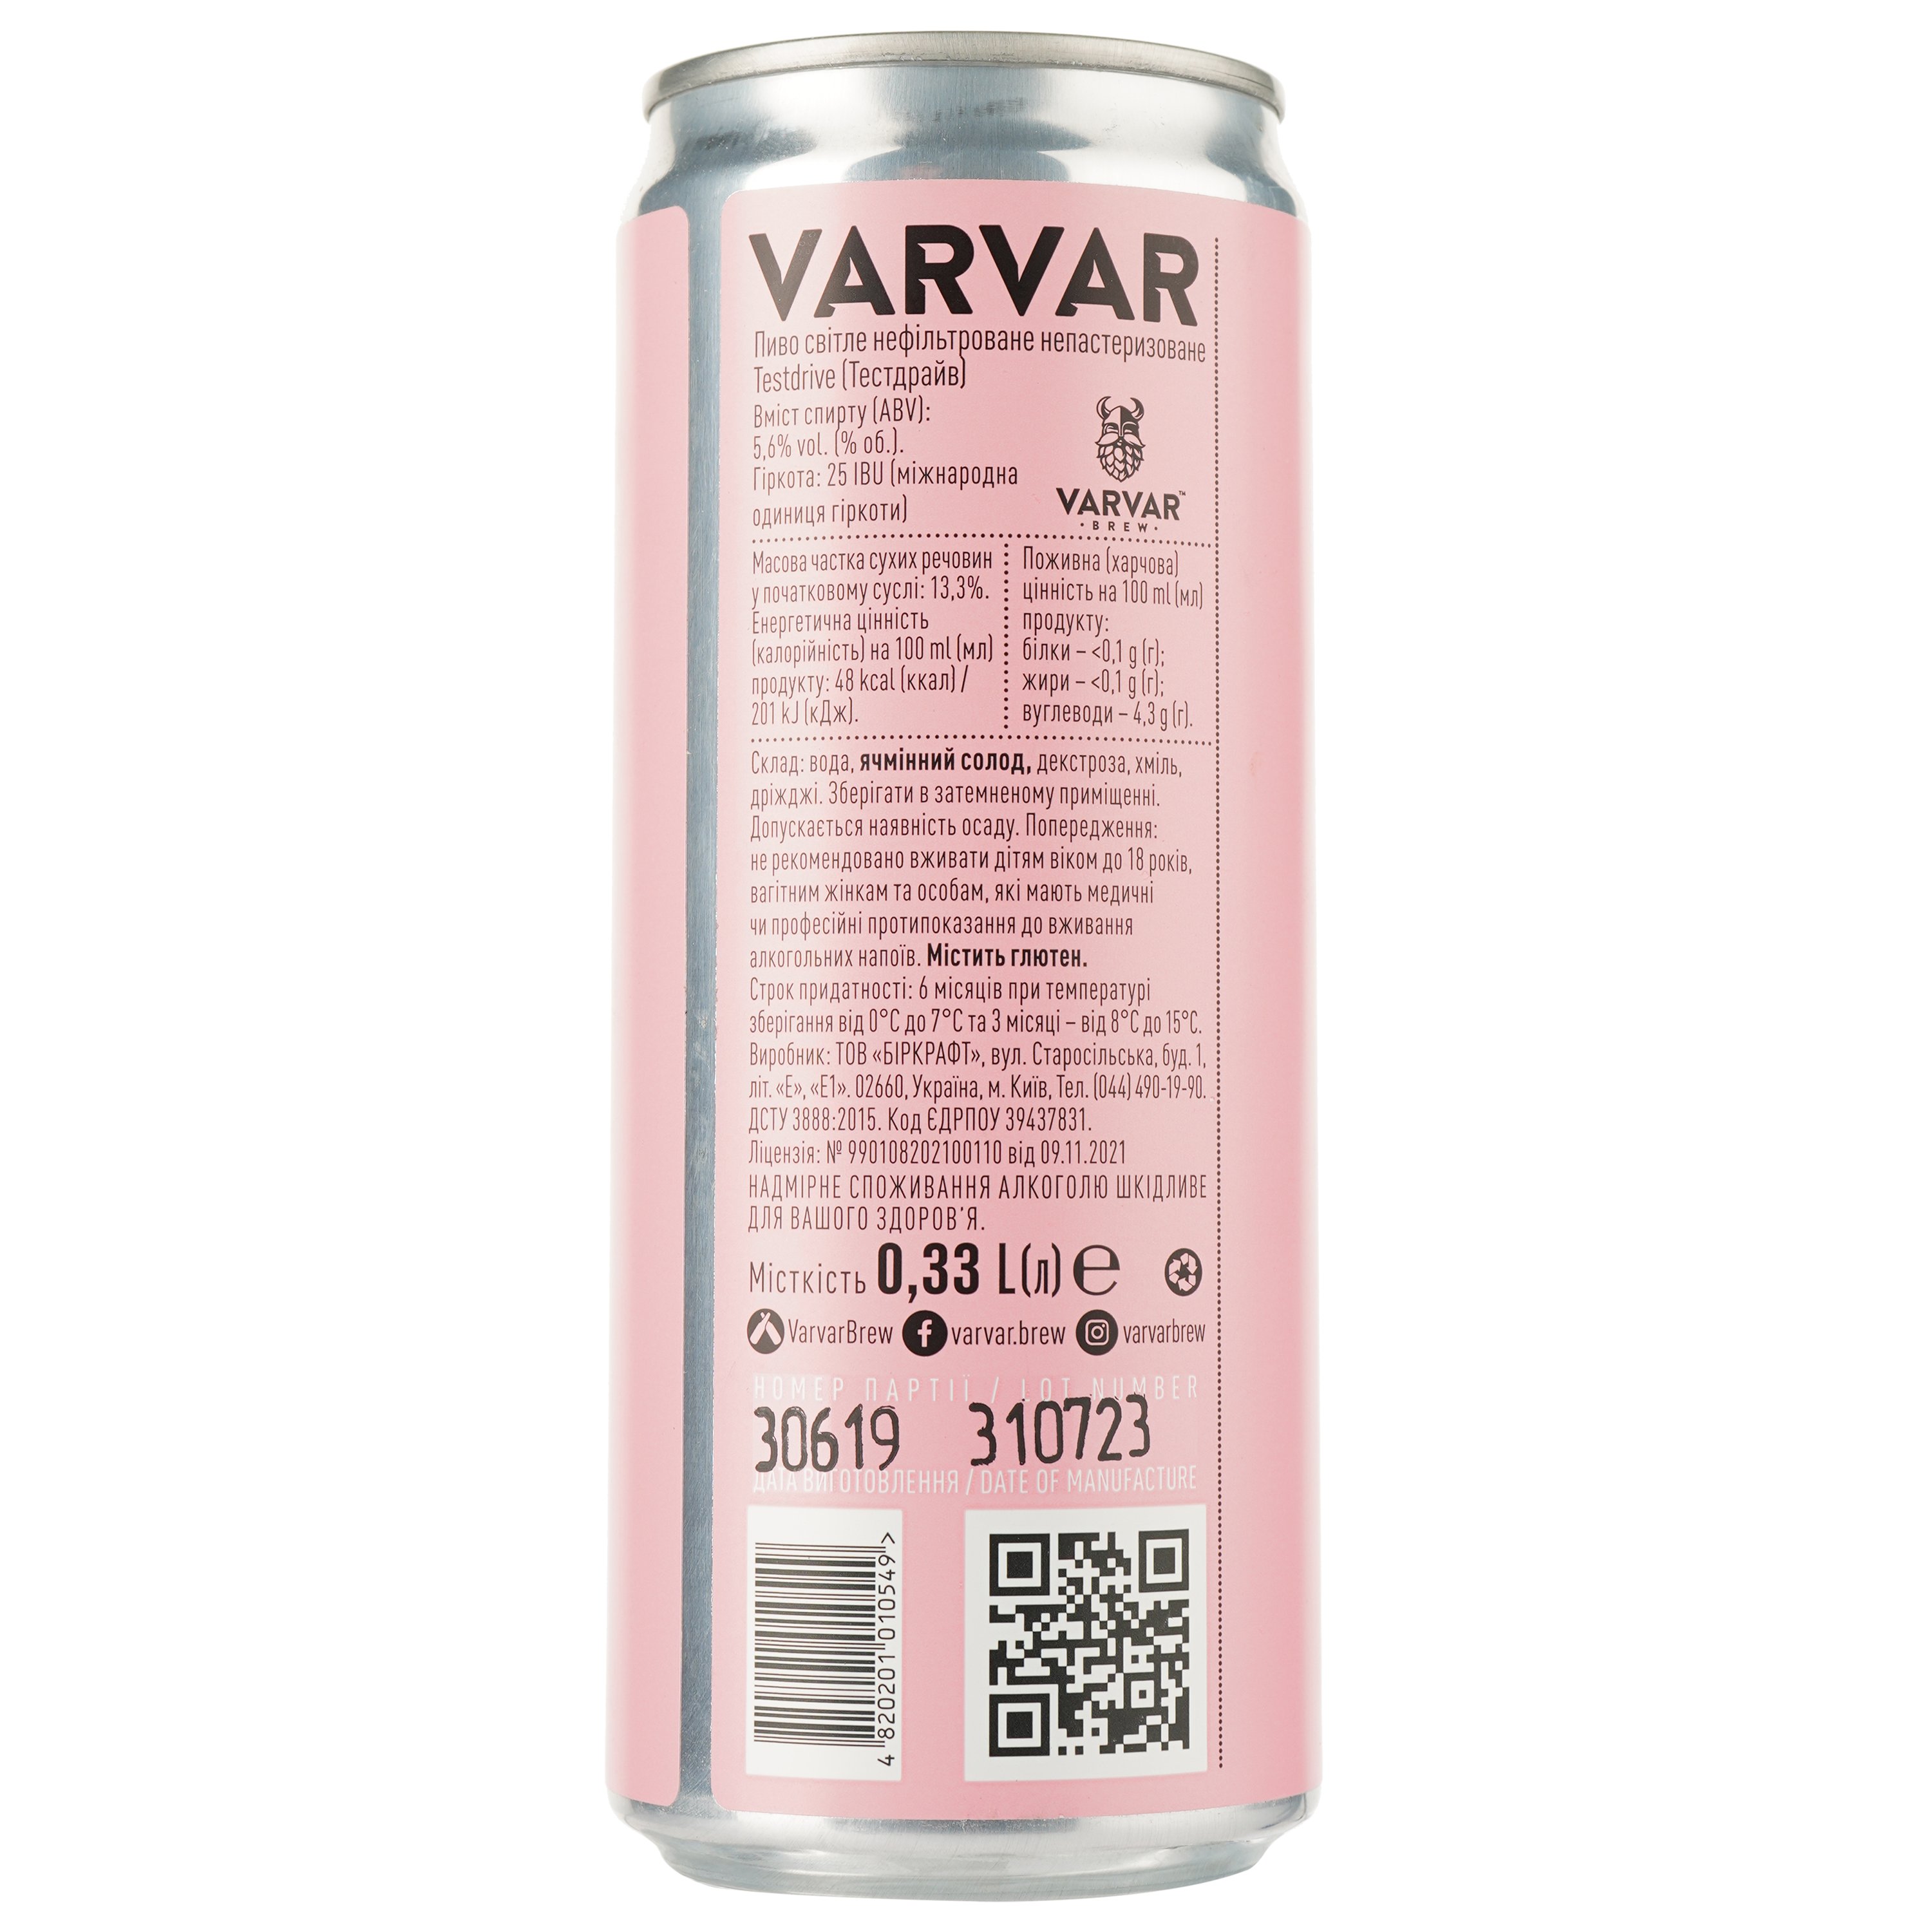 Пиво Varvar Testdrive IPA, светлое, нефильтрованное, 5,6%, ж/б, 0,33 л (823950) - фото 2